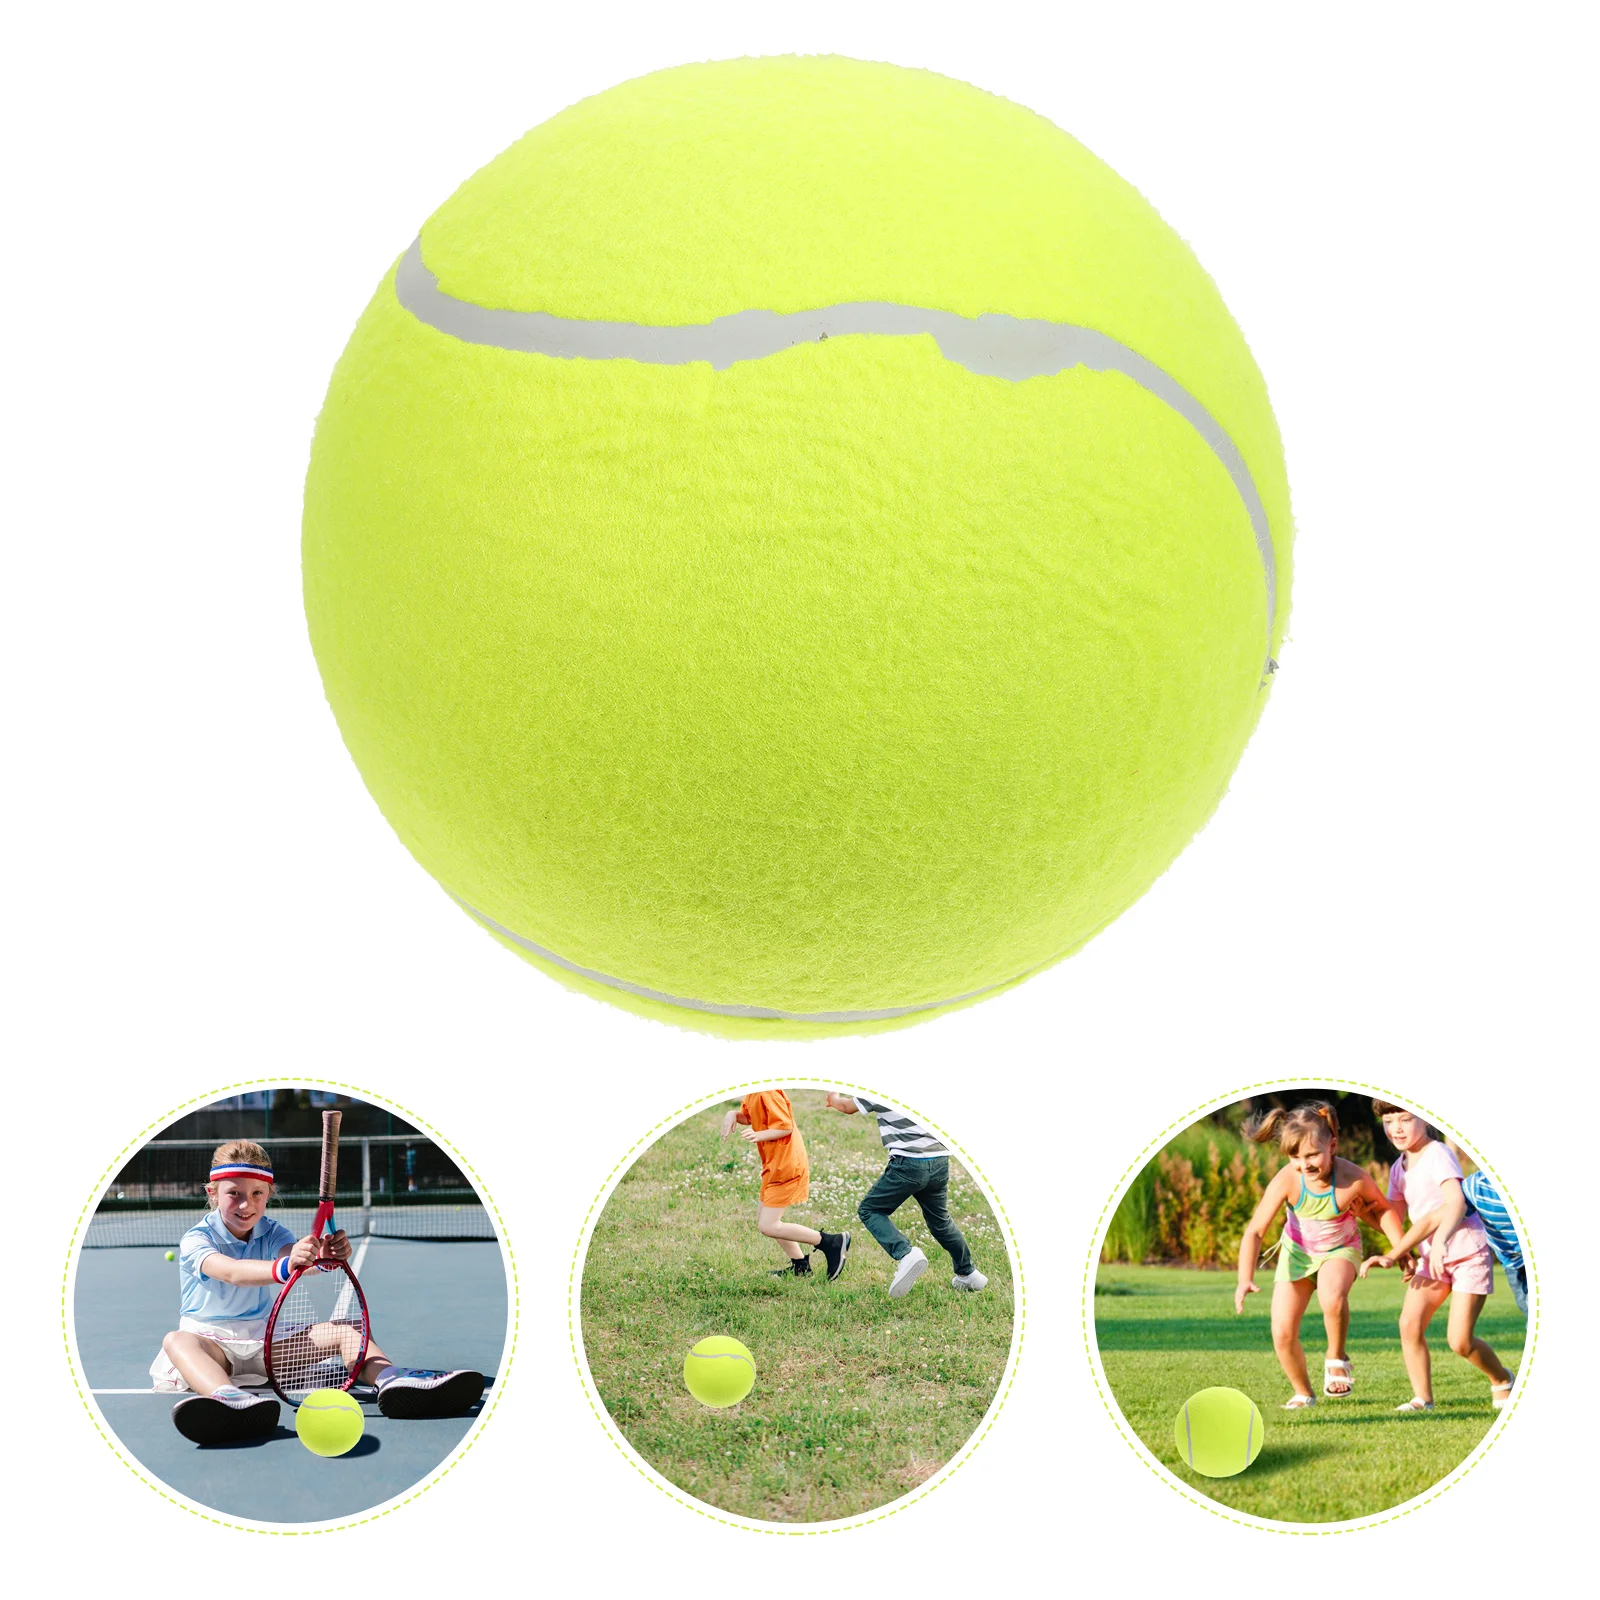 

1 шт. 20 см надувной фланелевый мяч, большой мяч для тенниса с надписью, резиновый мяч для детей, для спорта на открытом воздухе (желтый)